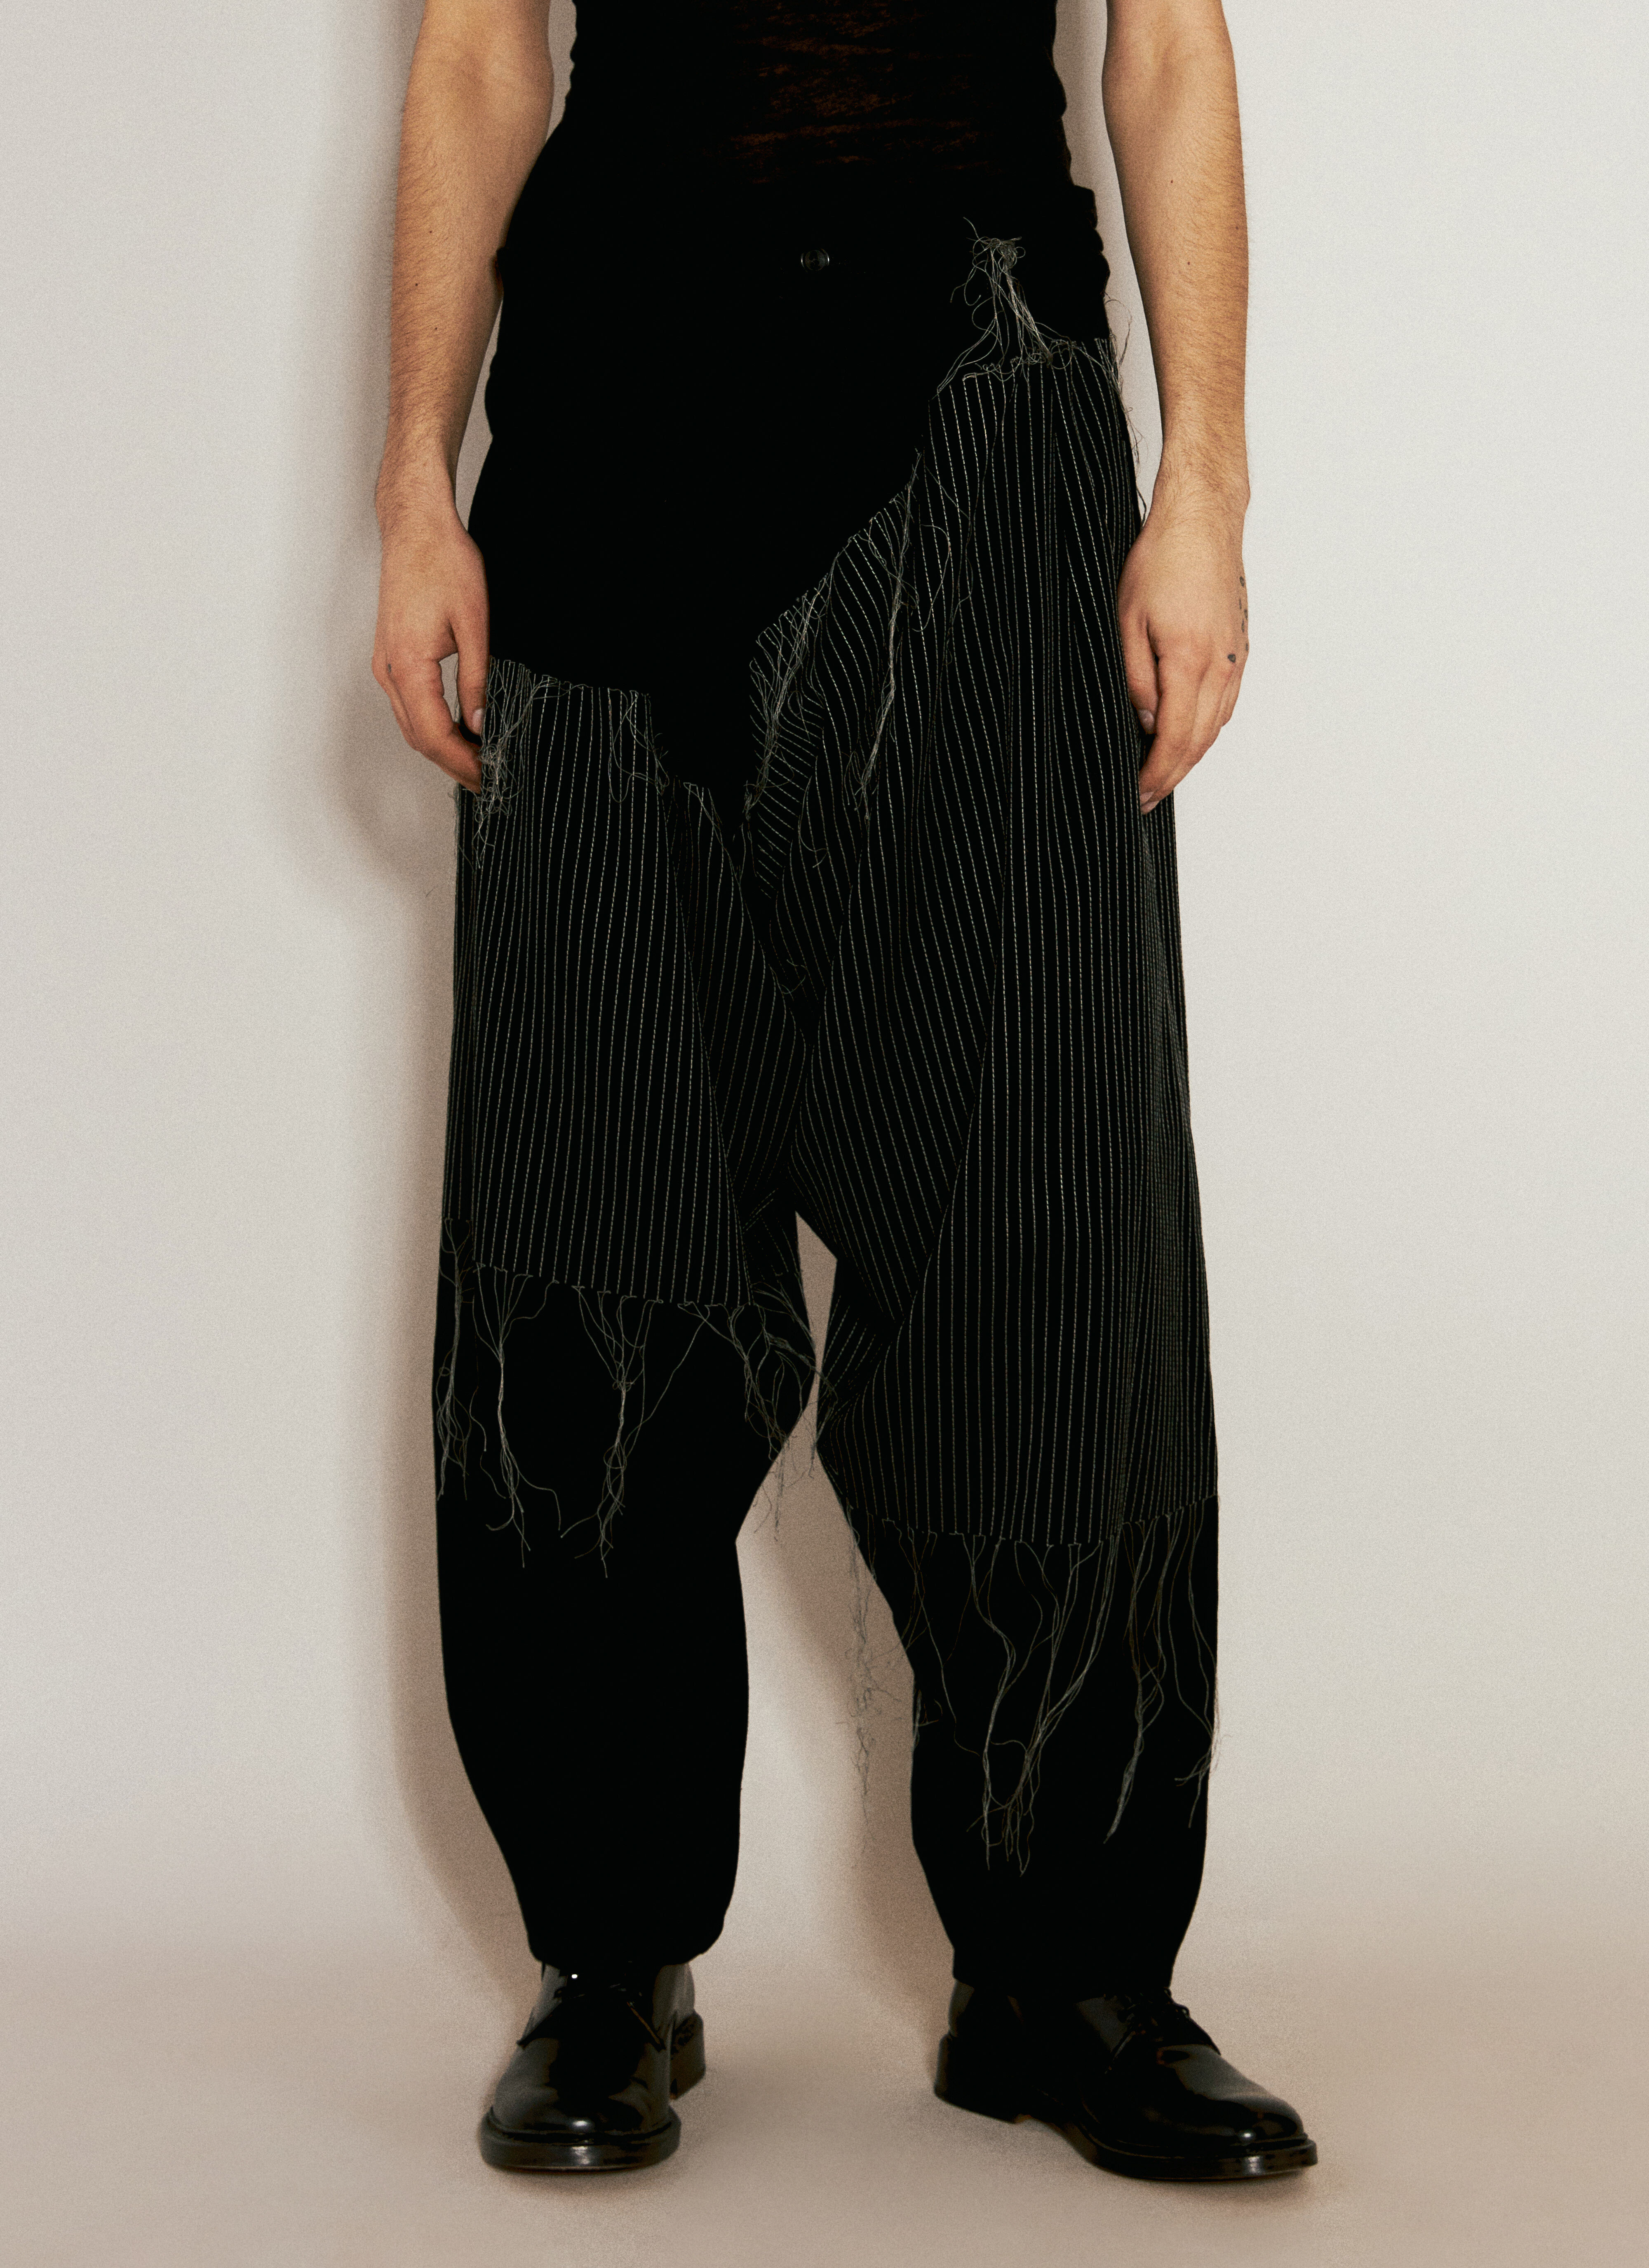 Yohji Yamamoto Embroidery Draped Pants Black yoy0154015